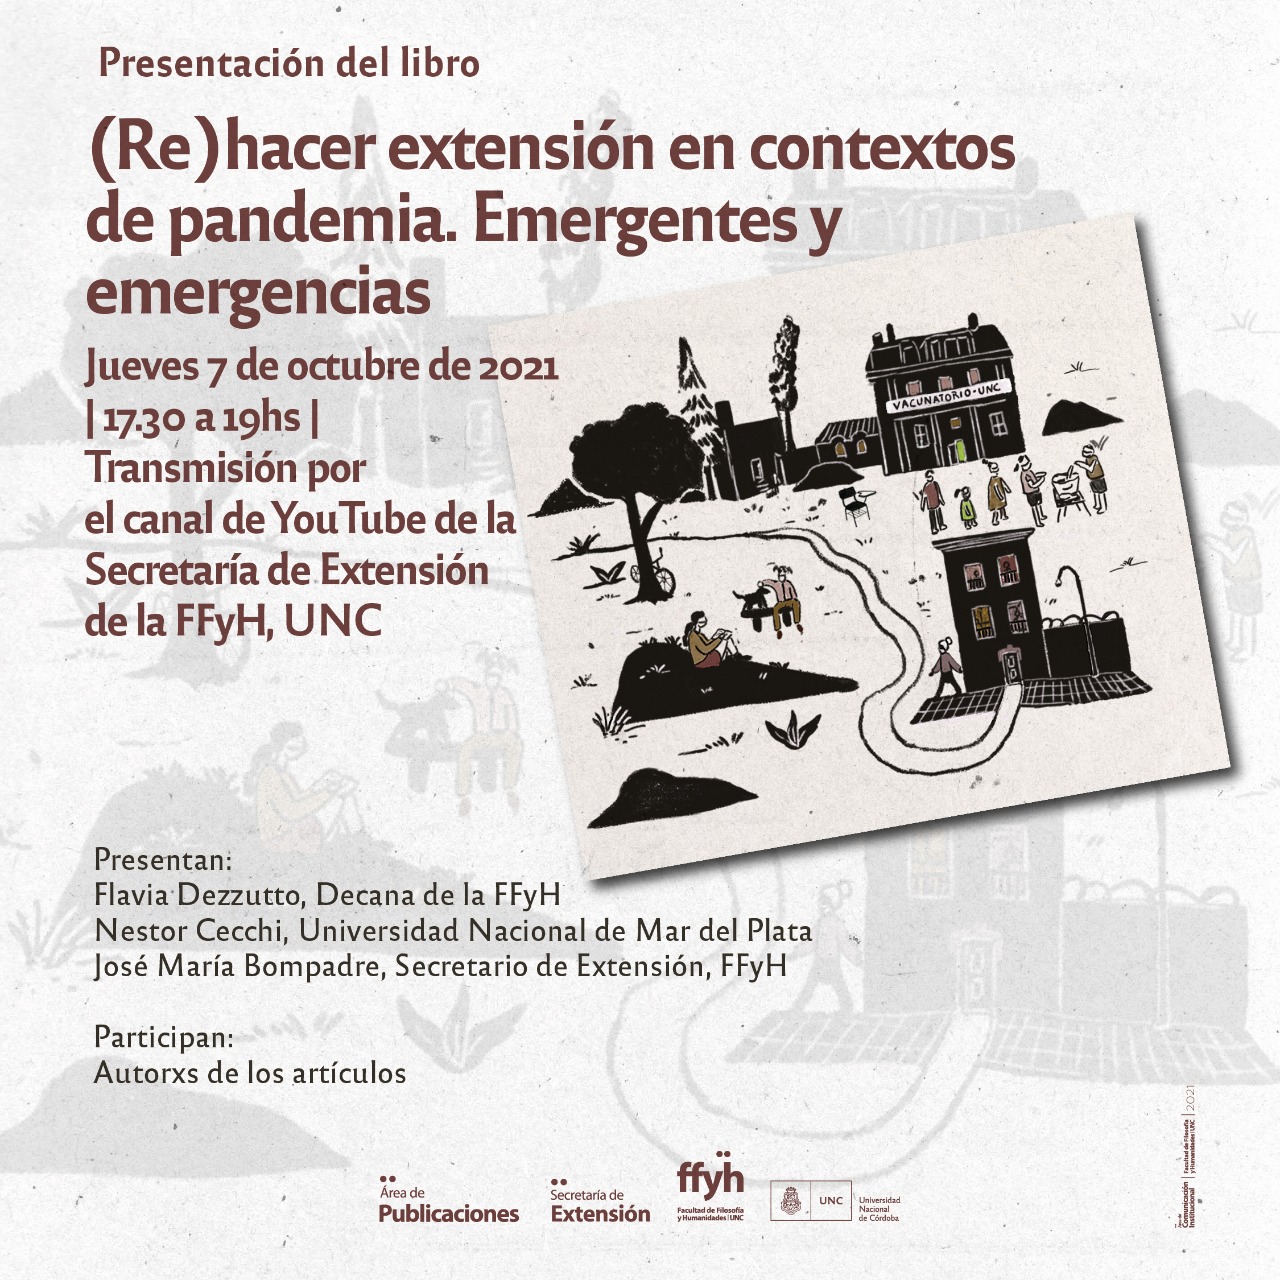 Presentación del libro: (Re)hacer extensión en contextos de pandemia. Emergentes y emergencias